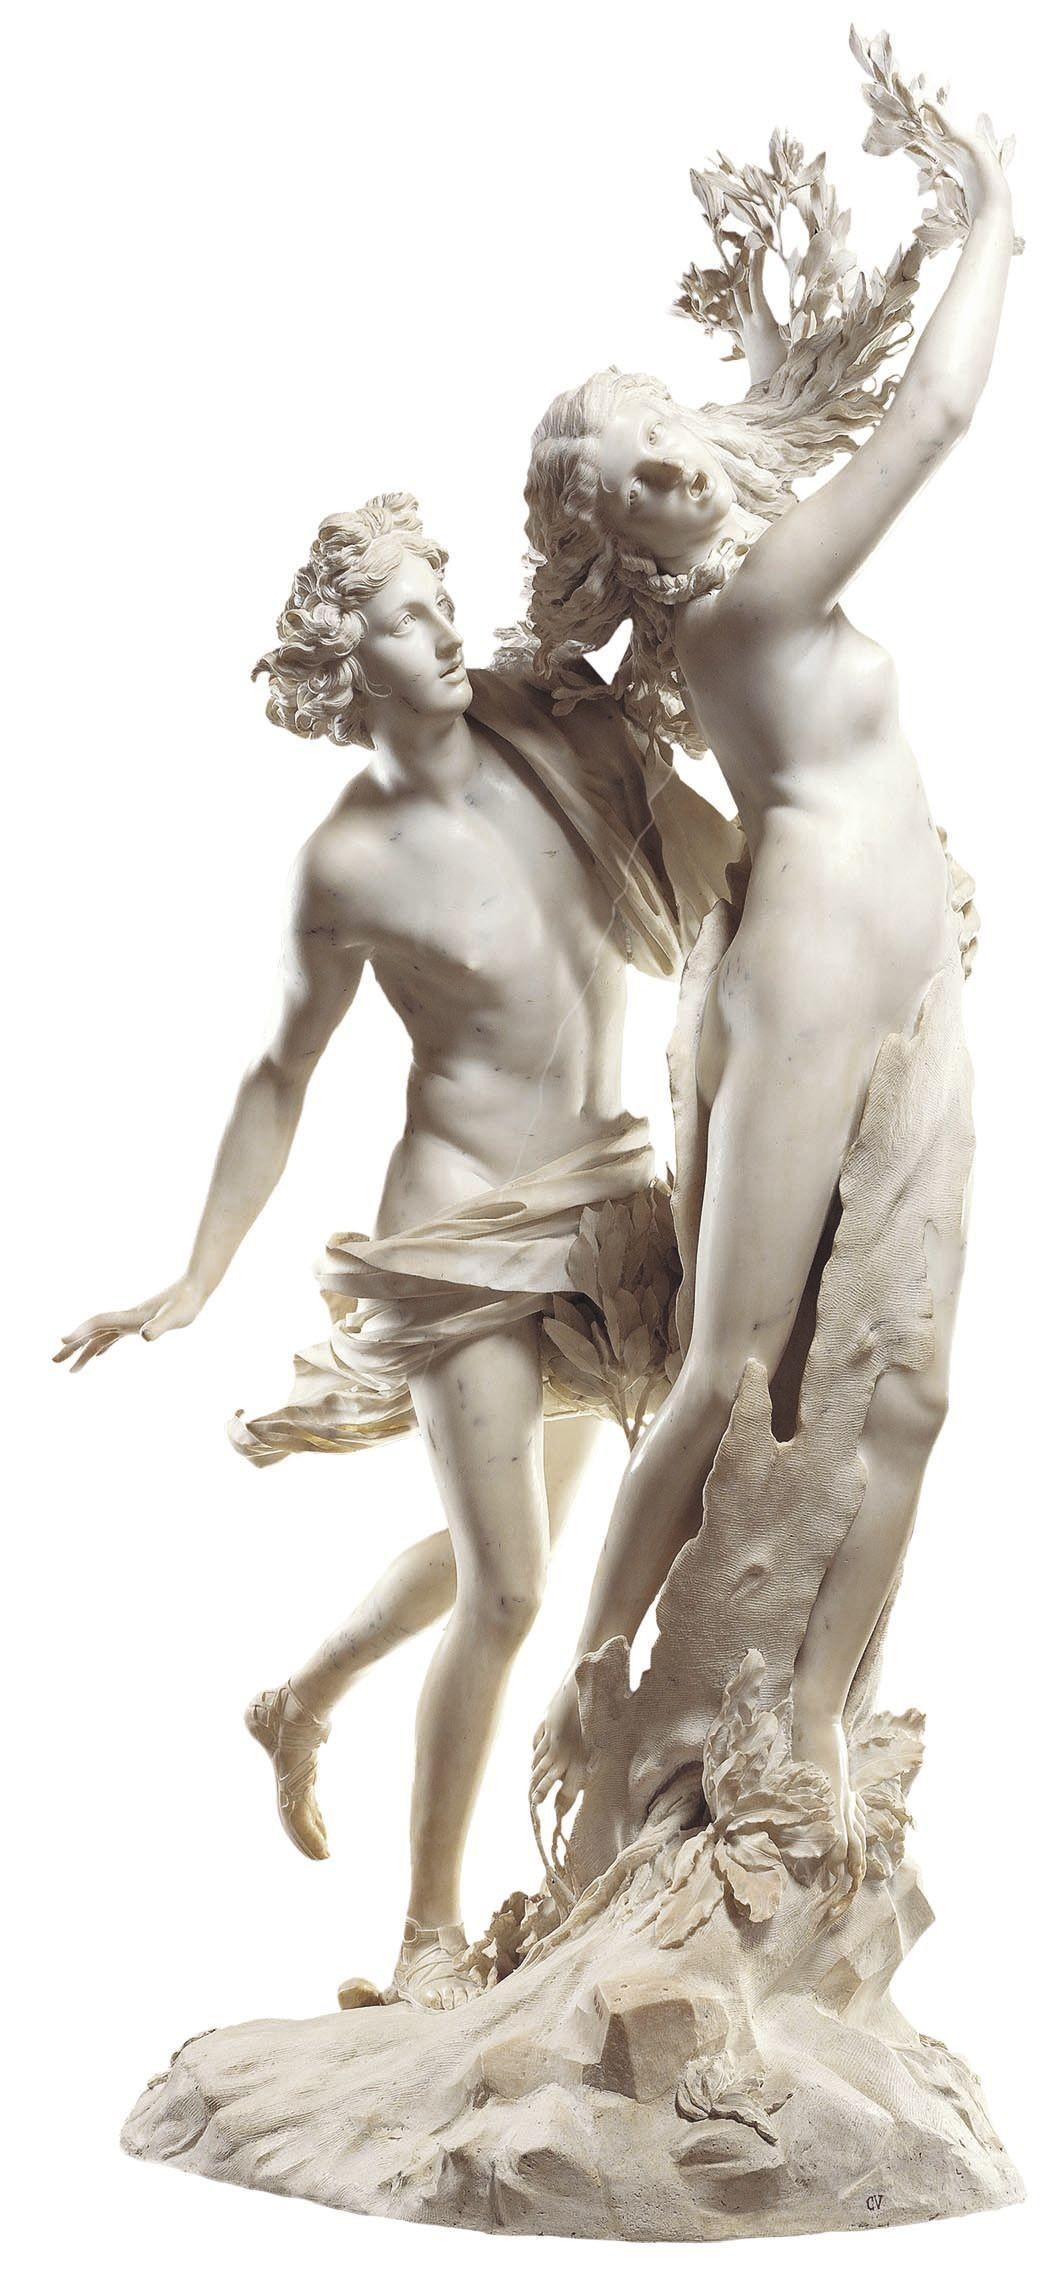 Gian Lorenzo Bernini (dit Le Bernin), Apollon et Daphné, 1622 - 1625, marbre, Rome.